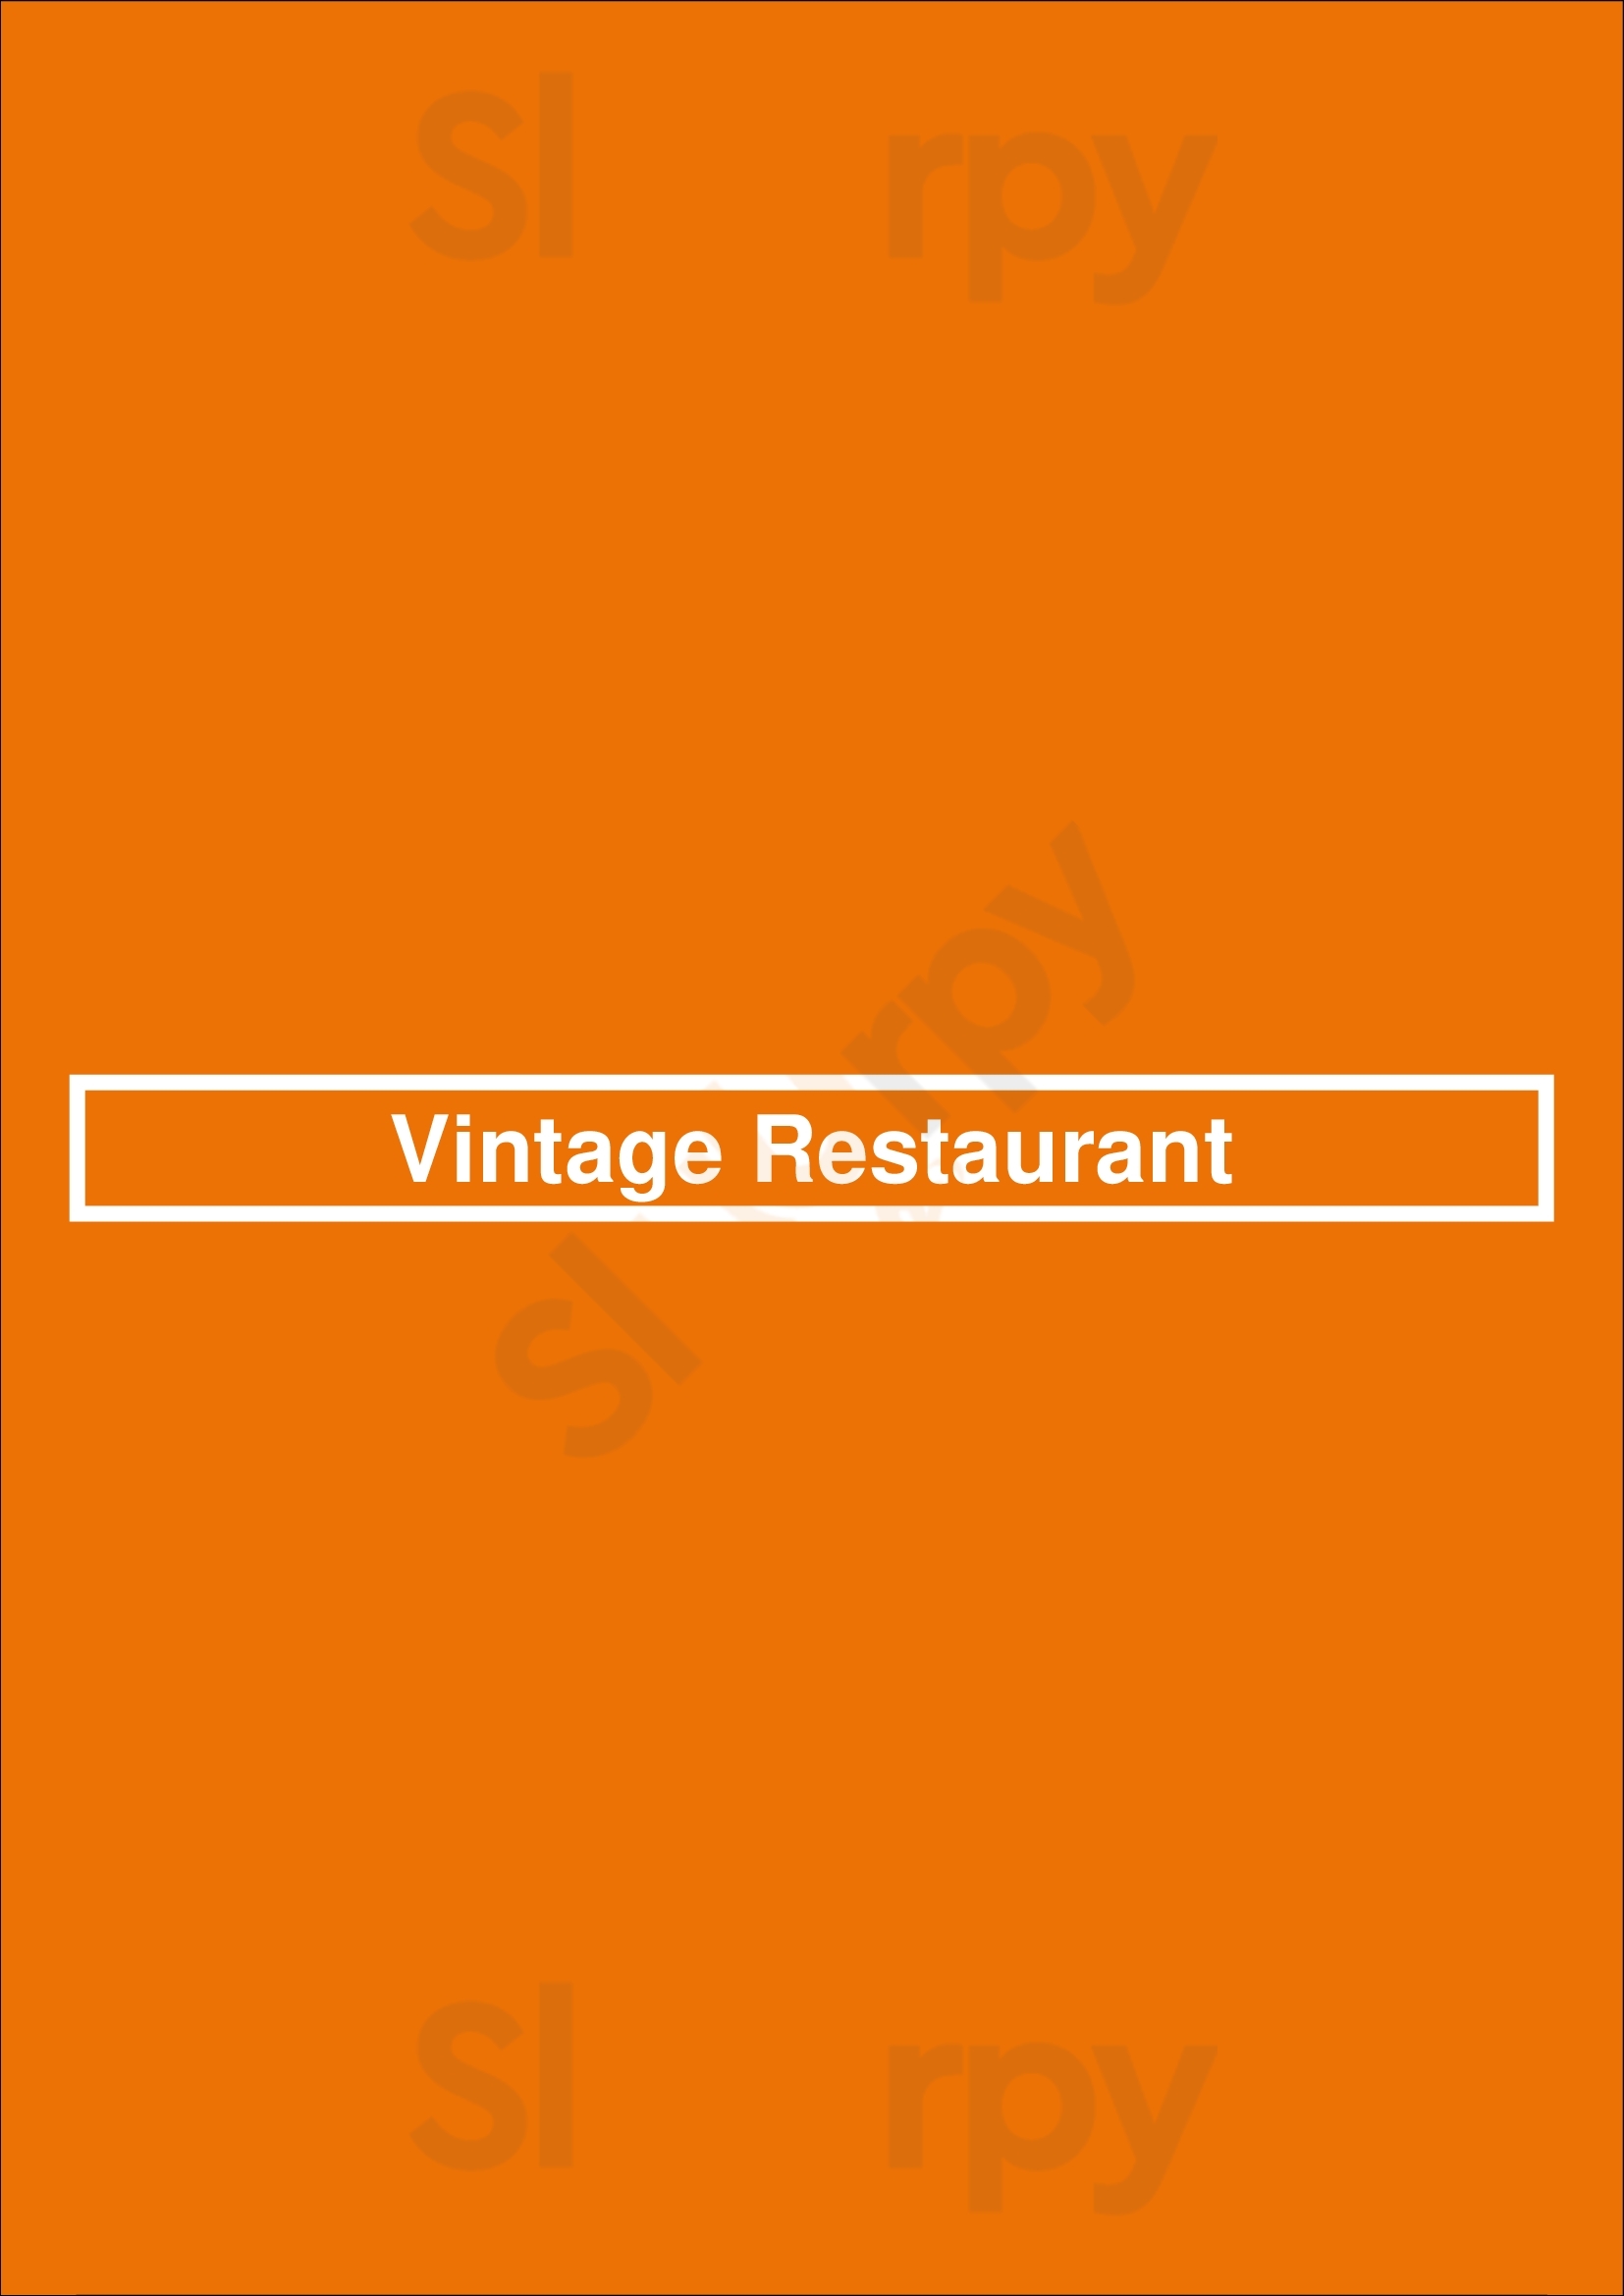 Vintage Restaurant Eindhoven Menu - 1